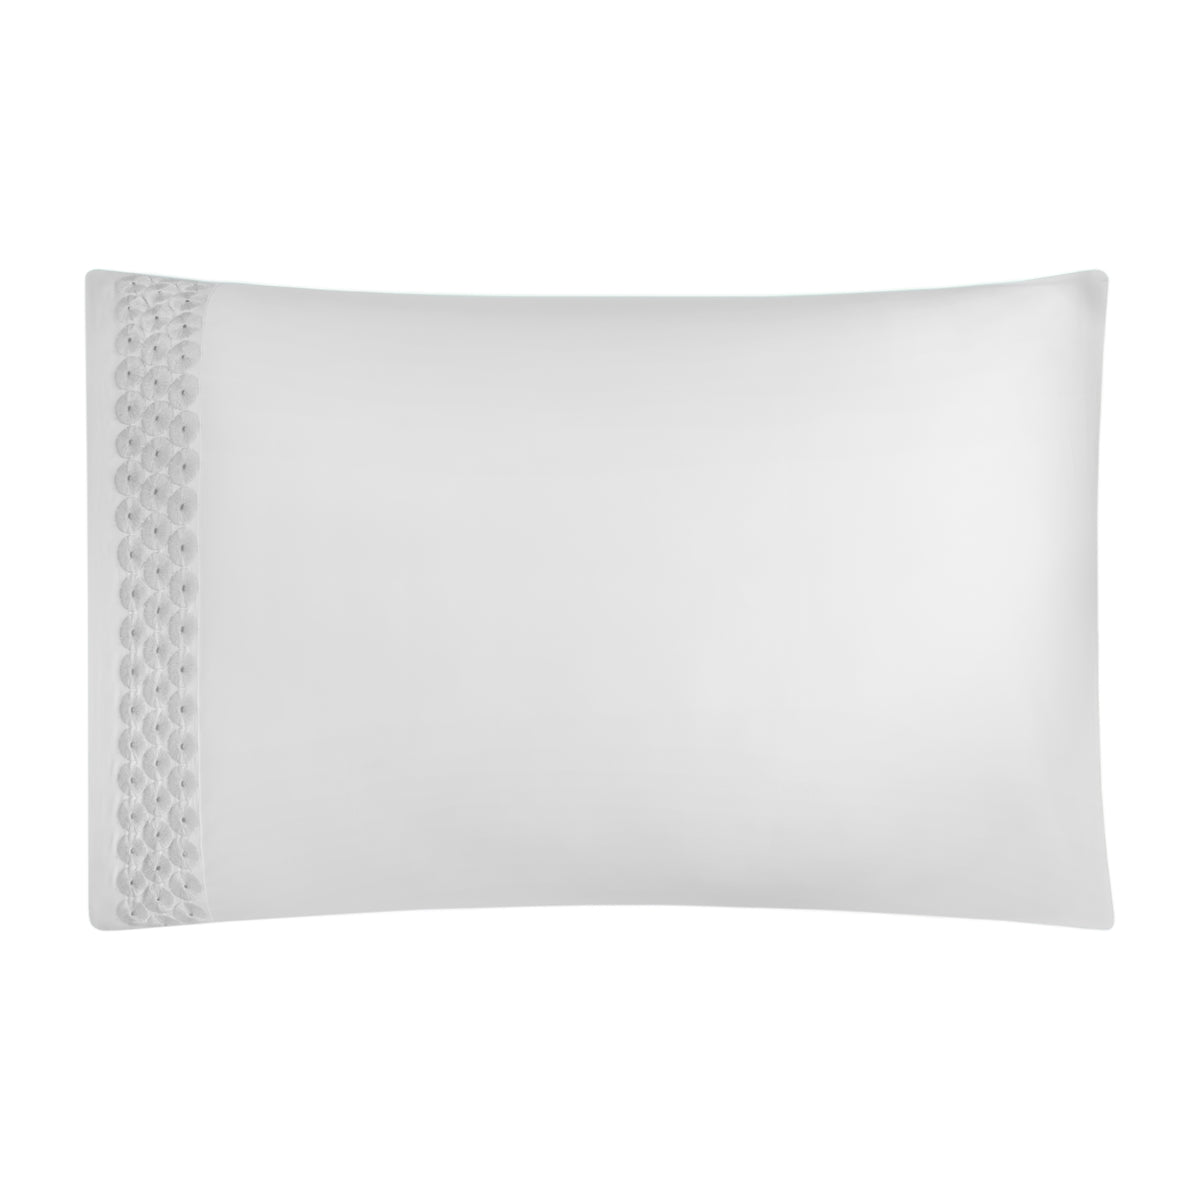 Silo of BOVI Angele Bedding Pillowcase White Silver Color